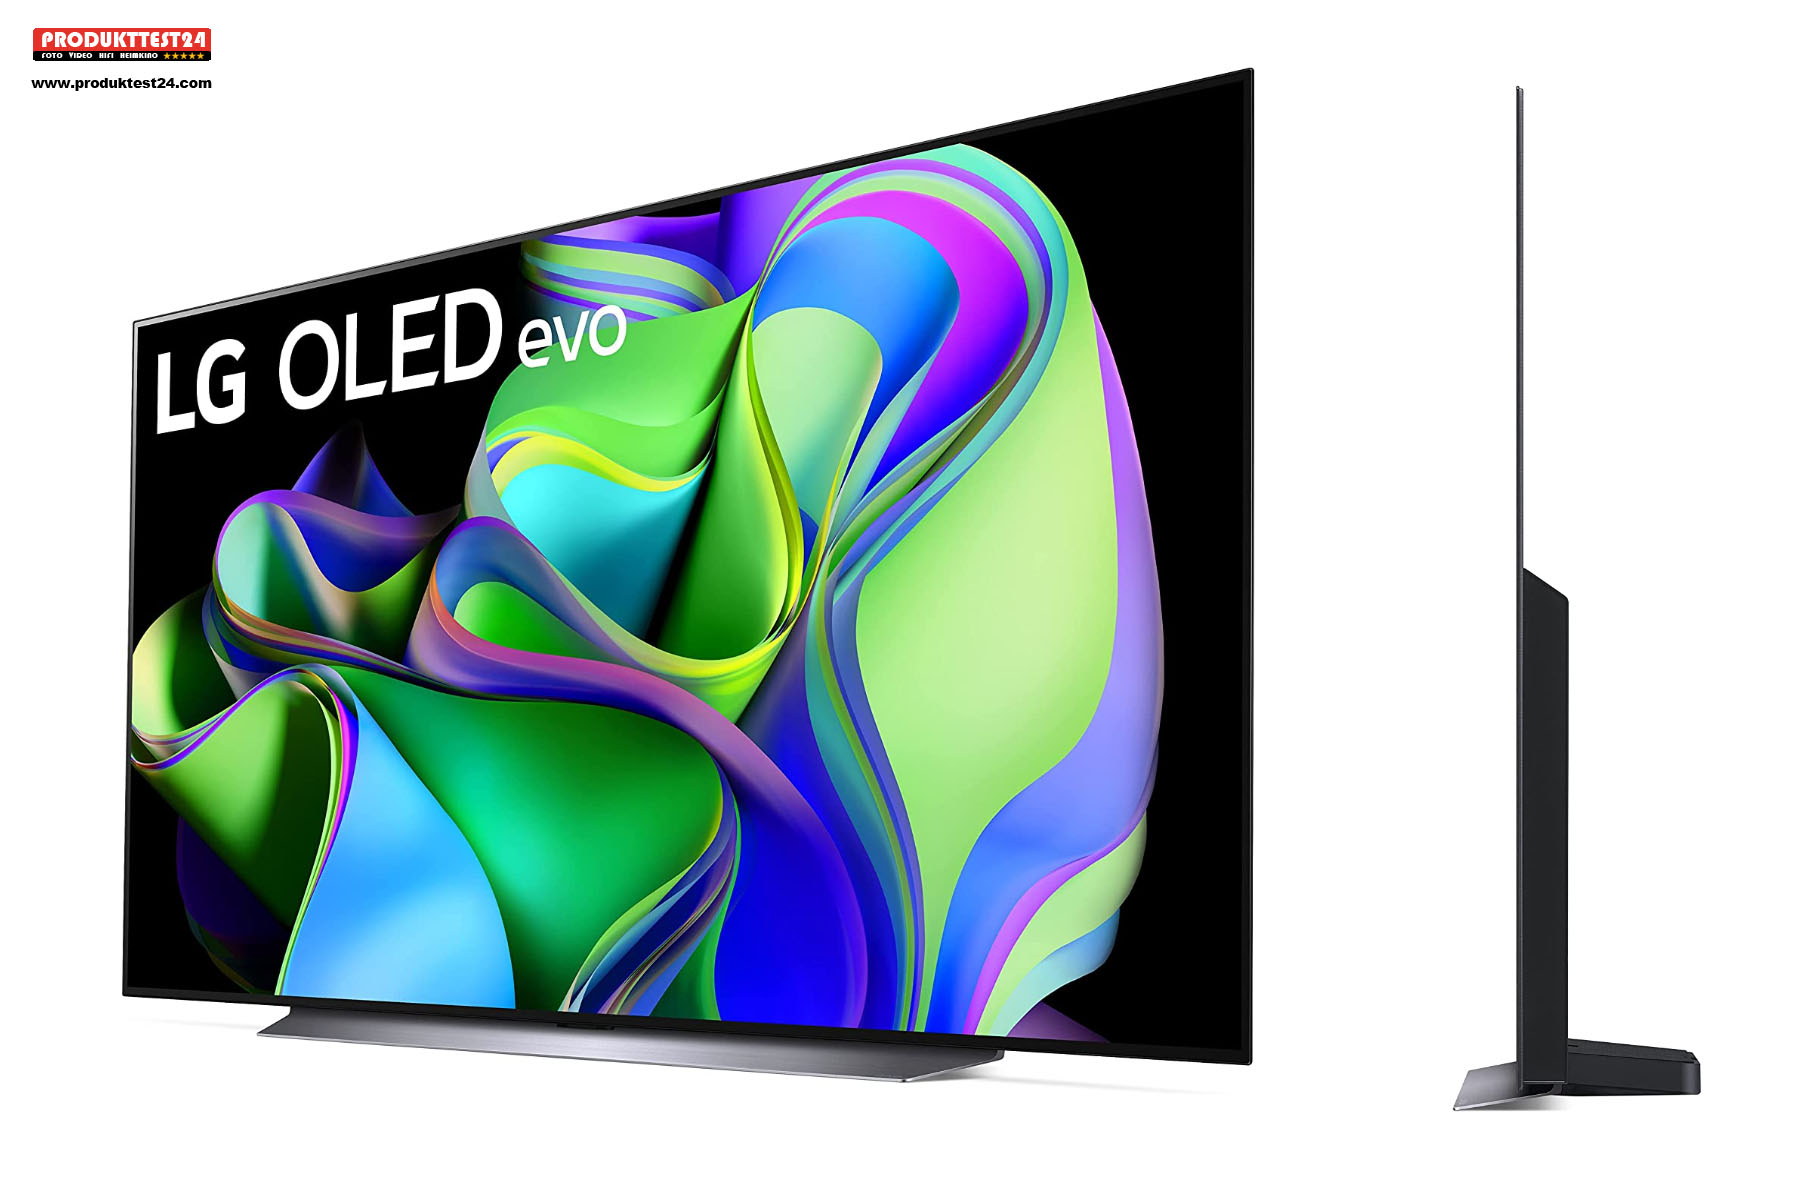 Der riesige 83 Zoll LG OLED Evo C3 Fernseher mit 211 cm Bilddiagonale